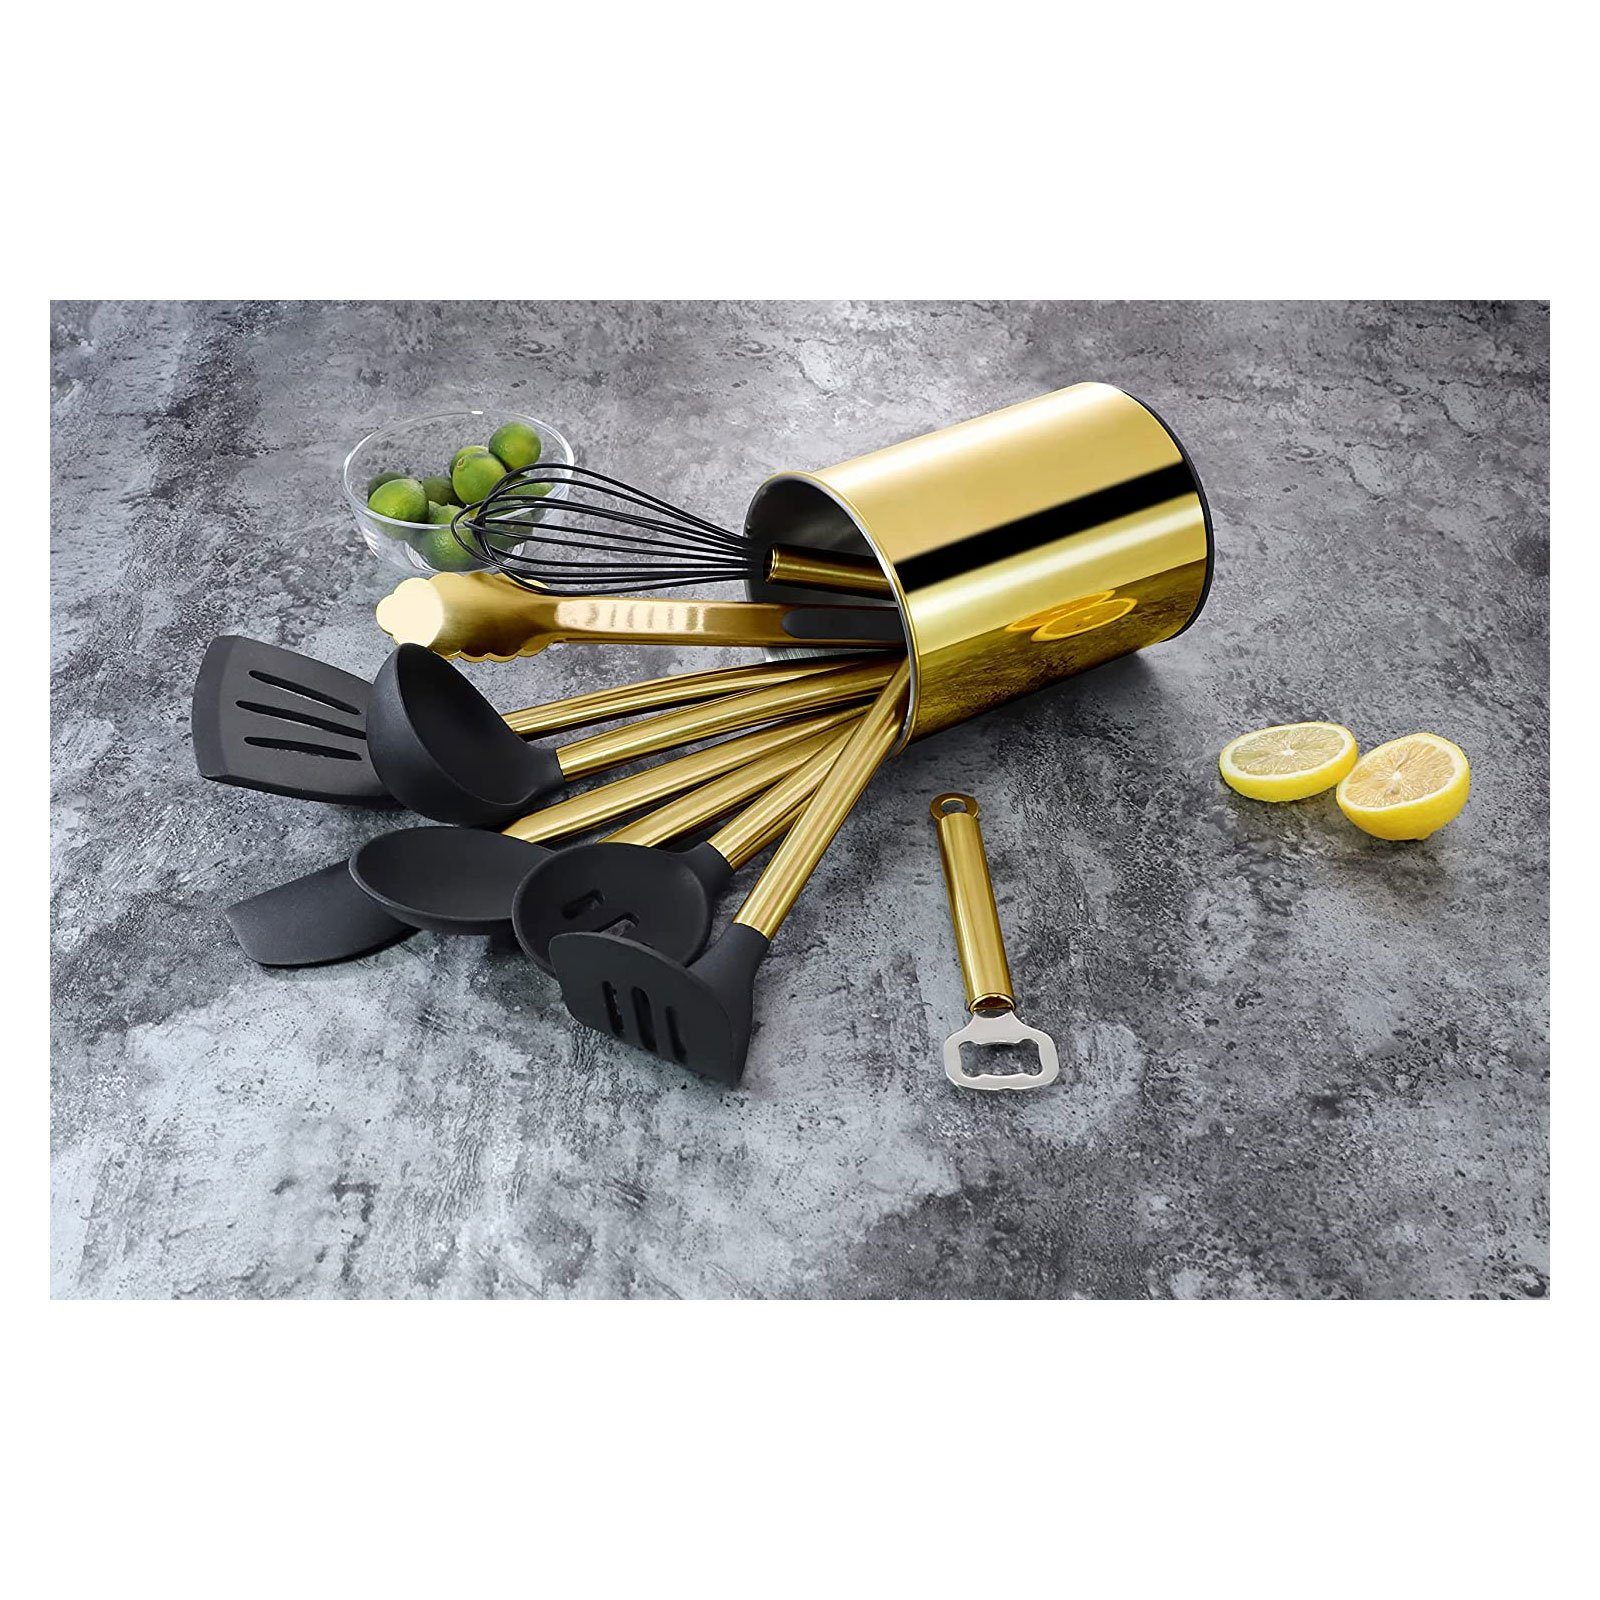 Gold Küchenorganizer-Set, Kochbesteck mit Edelstahlgriff, mit Kochset Utensilienhalter, ECHTWERK